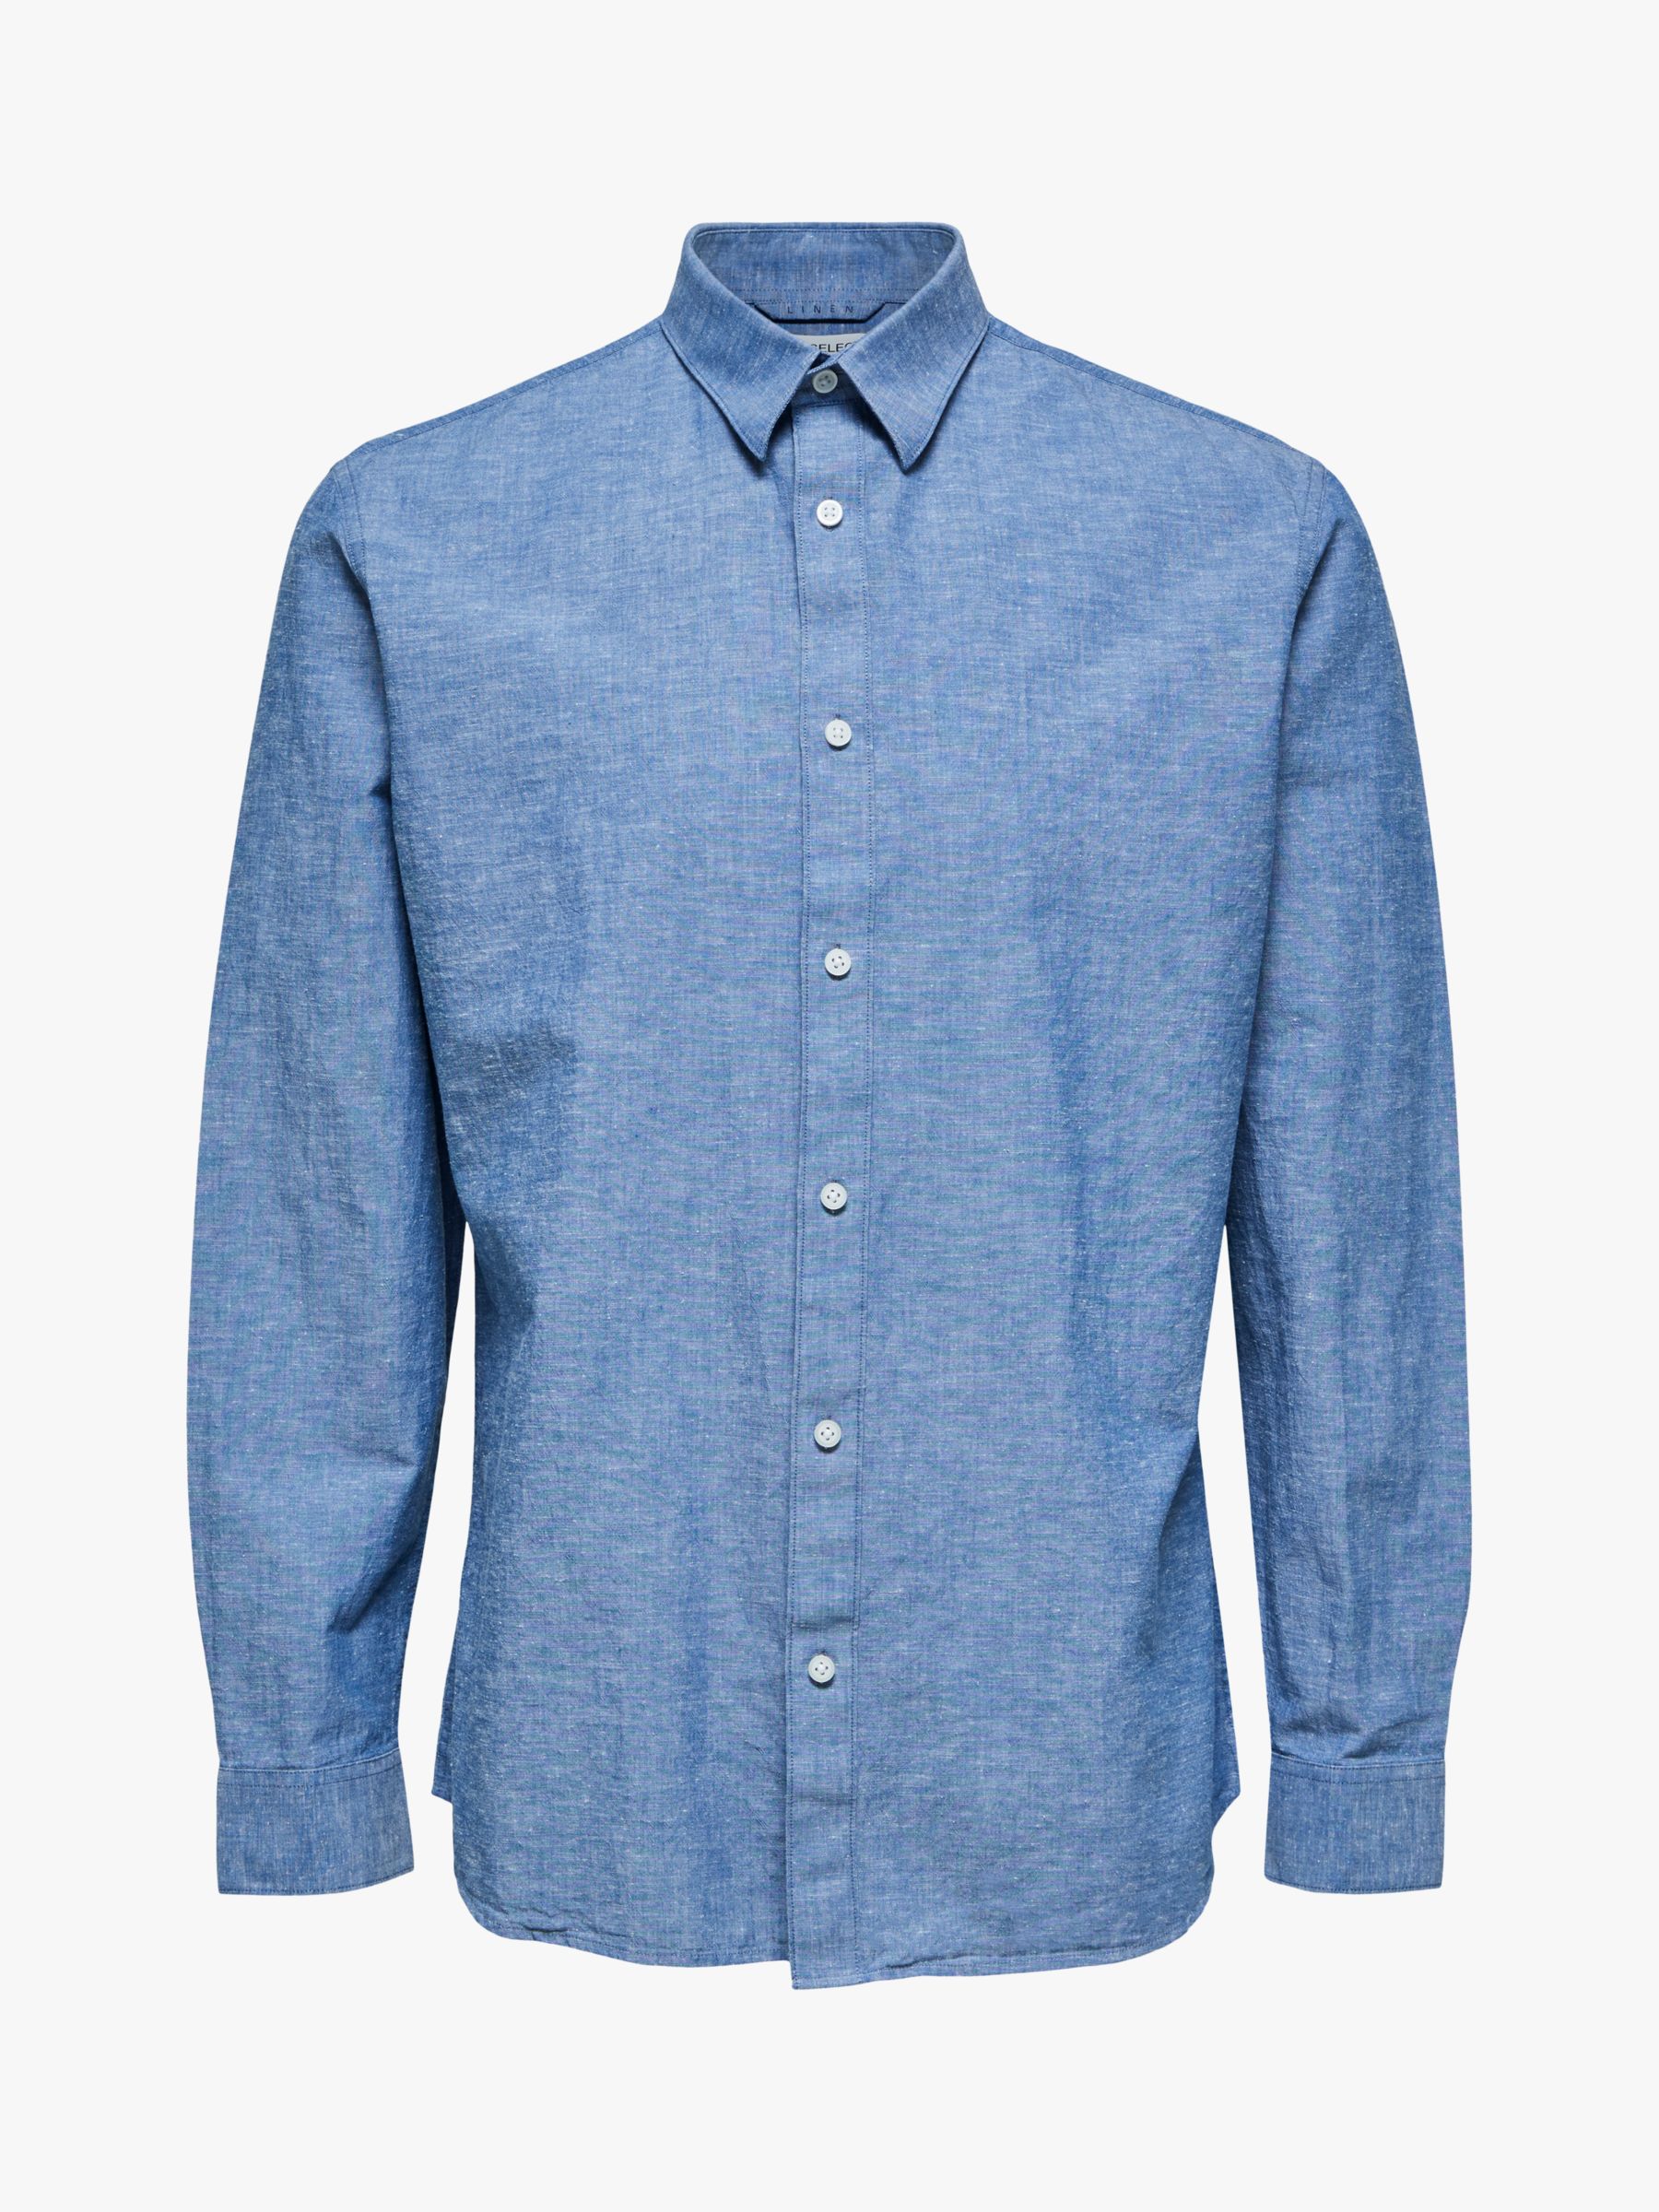 SELECTED HOMME Cotton Linen Blend Shirt, Medium Blue Denim, S